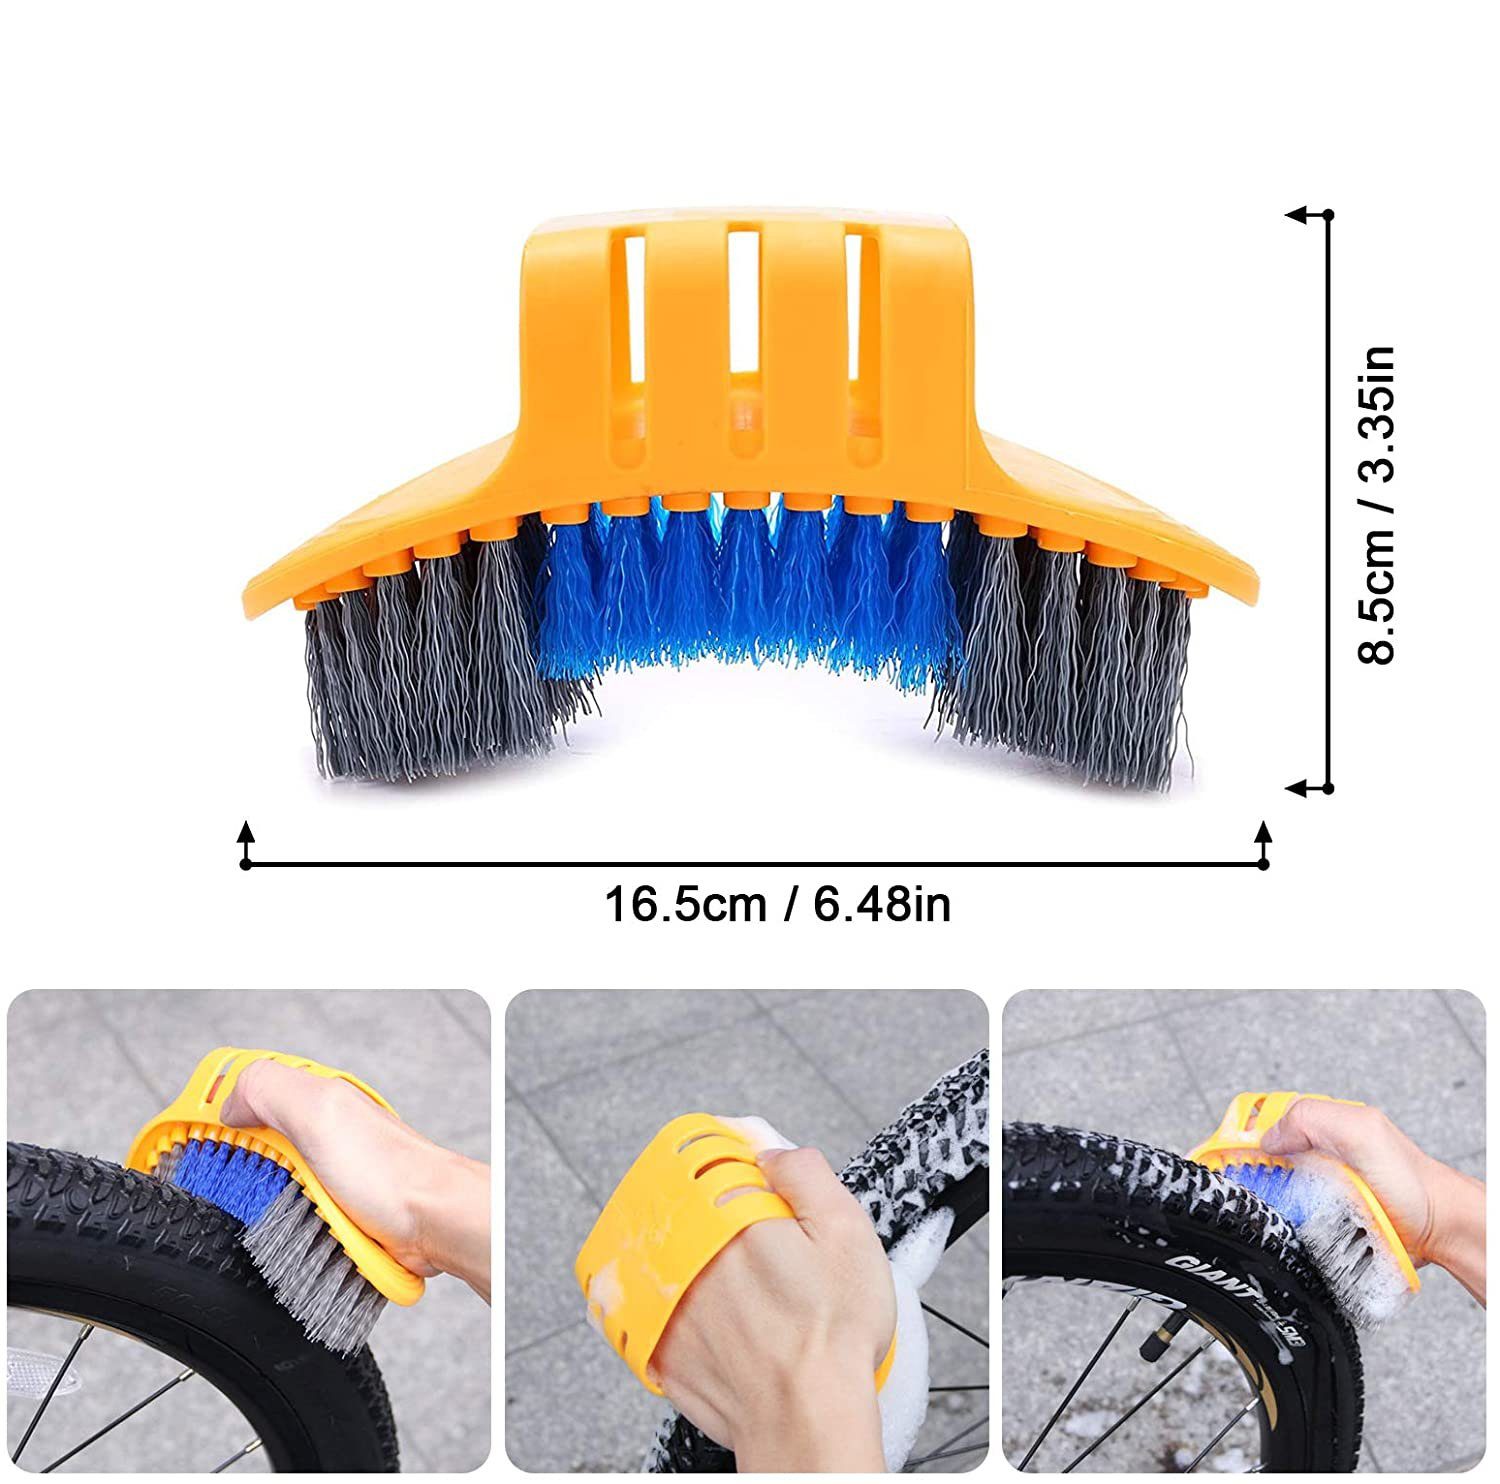 Leway Fahrradwerkzeugset »8-teiliges Fahrrad Reinigungswerkzeug-Set,Fahrrad  Reinigungsset,Werkzeugset zur Reinigung der Fahrradkette,  Fahrradreinigungsbürsten-Set für Fahrradkette/Reifen/Ritzel«